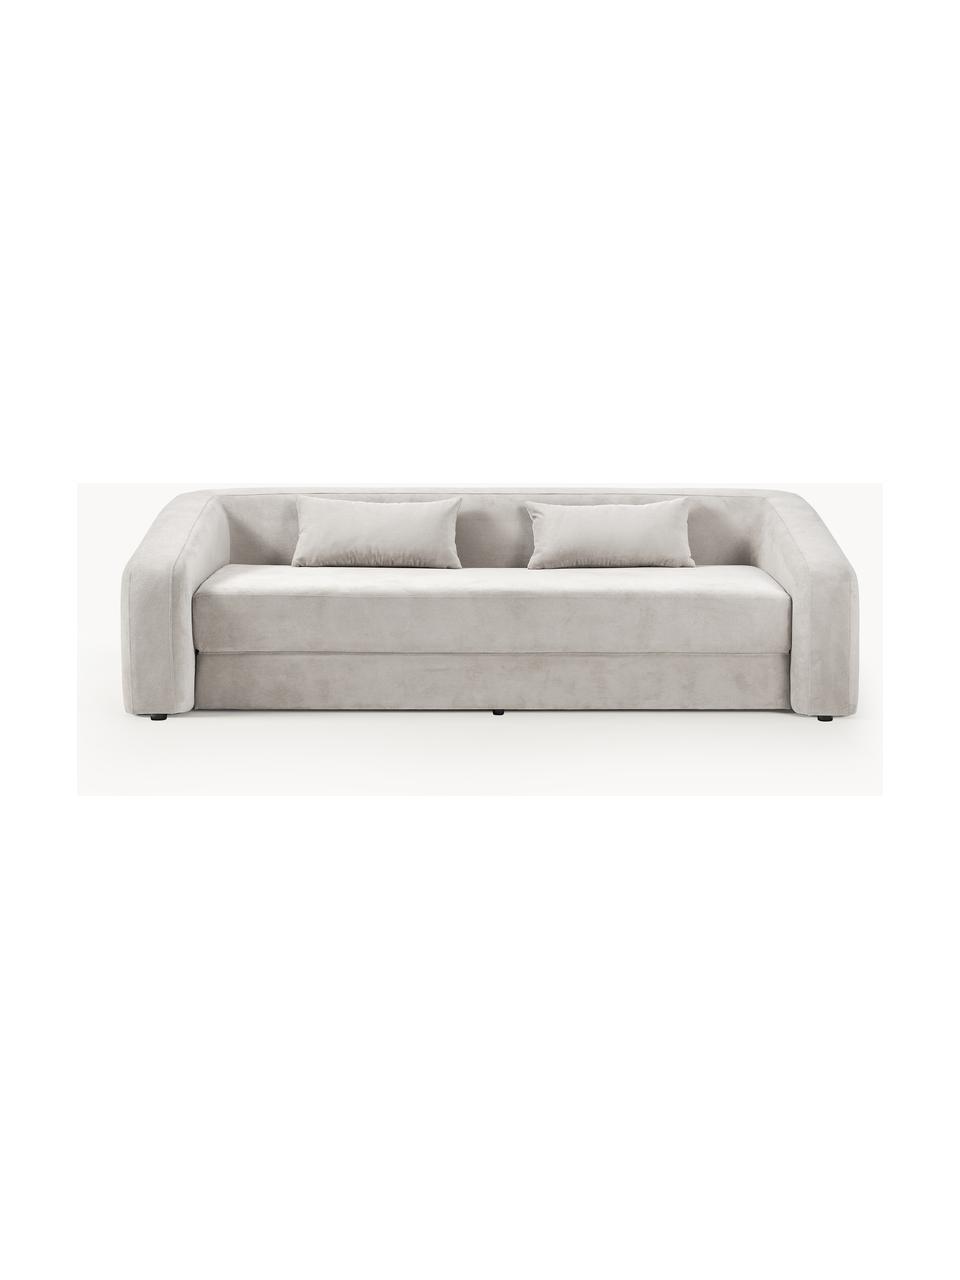 Sofa rozkładana Eliot (3-osobowa), Tapicerka: 88% poliester, 12% nylon , Nogi: tworzywo sztuczne, Jasnoszara tkanina, S 230 x G 100 cm